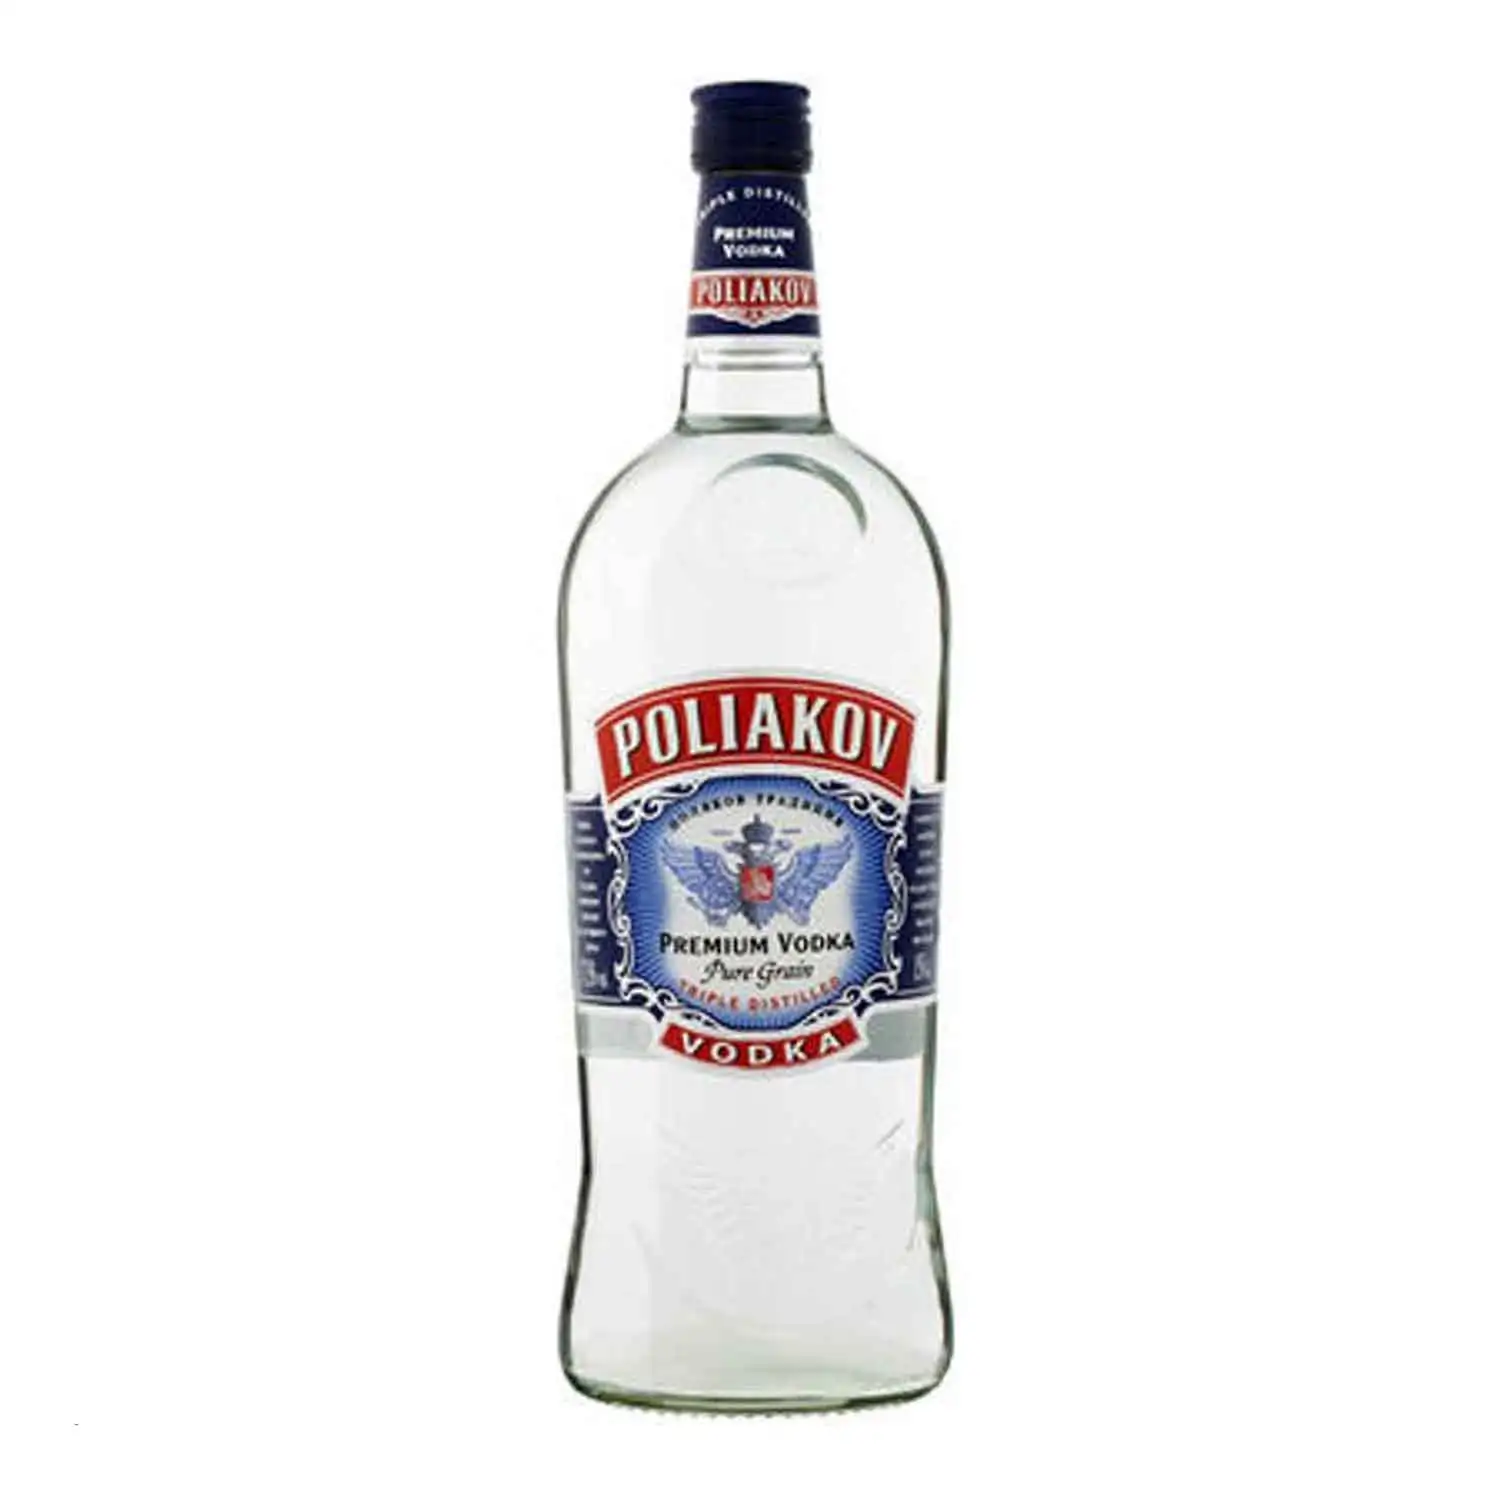 Poliakov vodka 1,5l Alc 37,5% - Buy at Real Tobacco